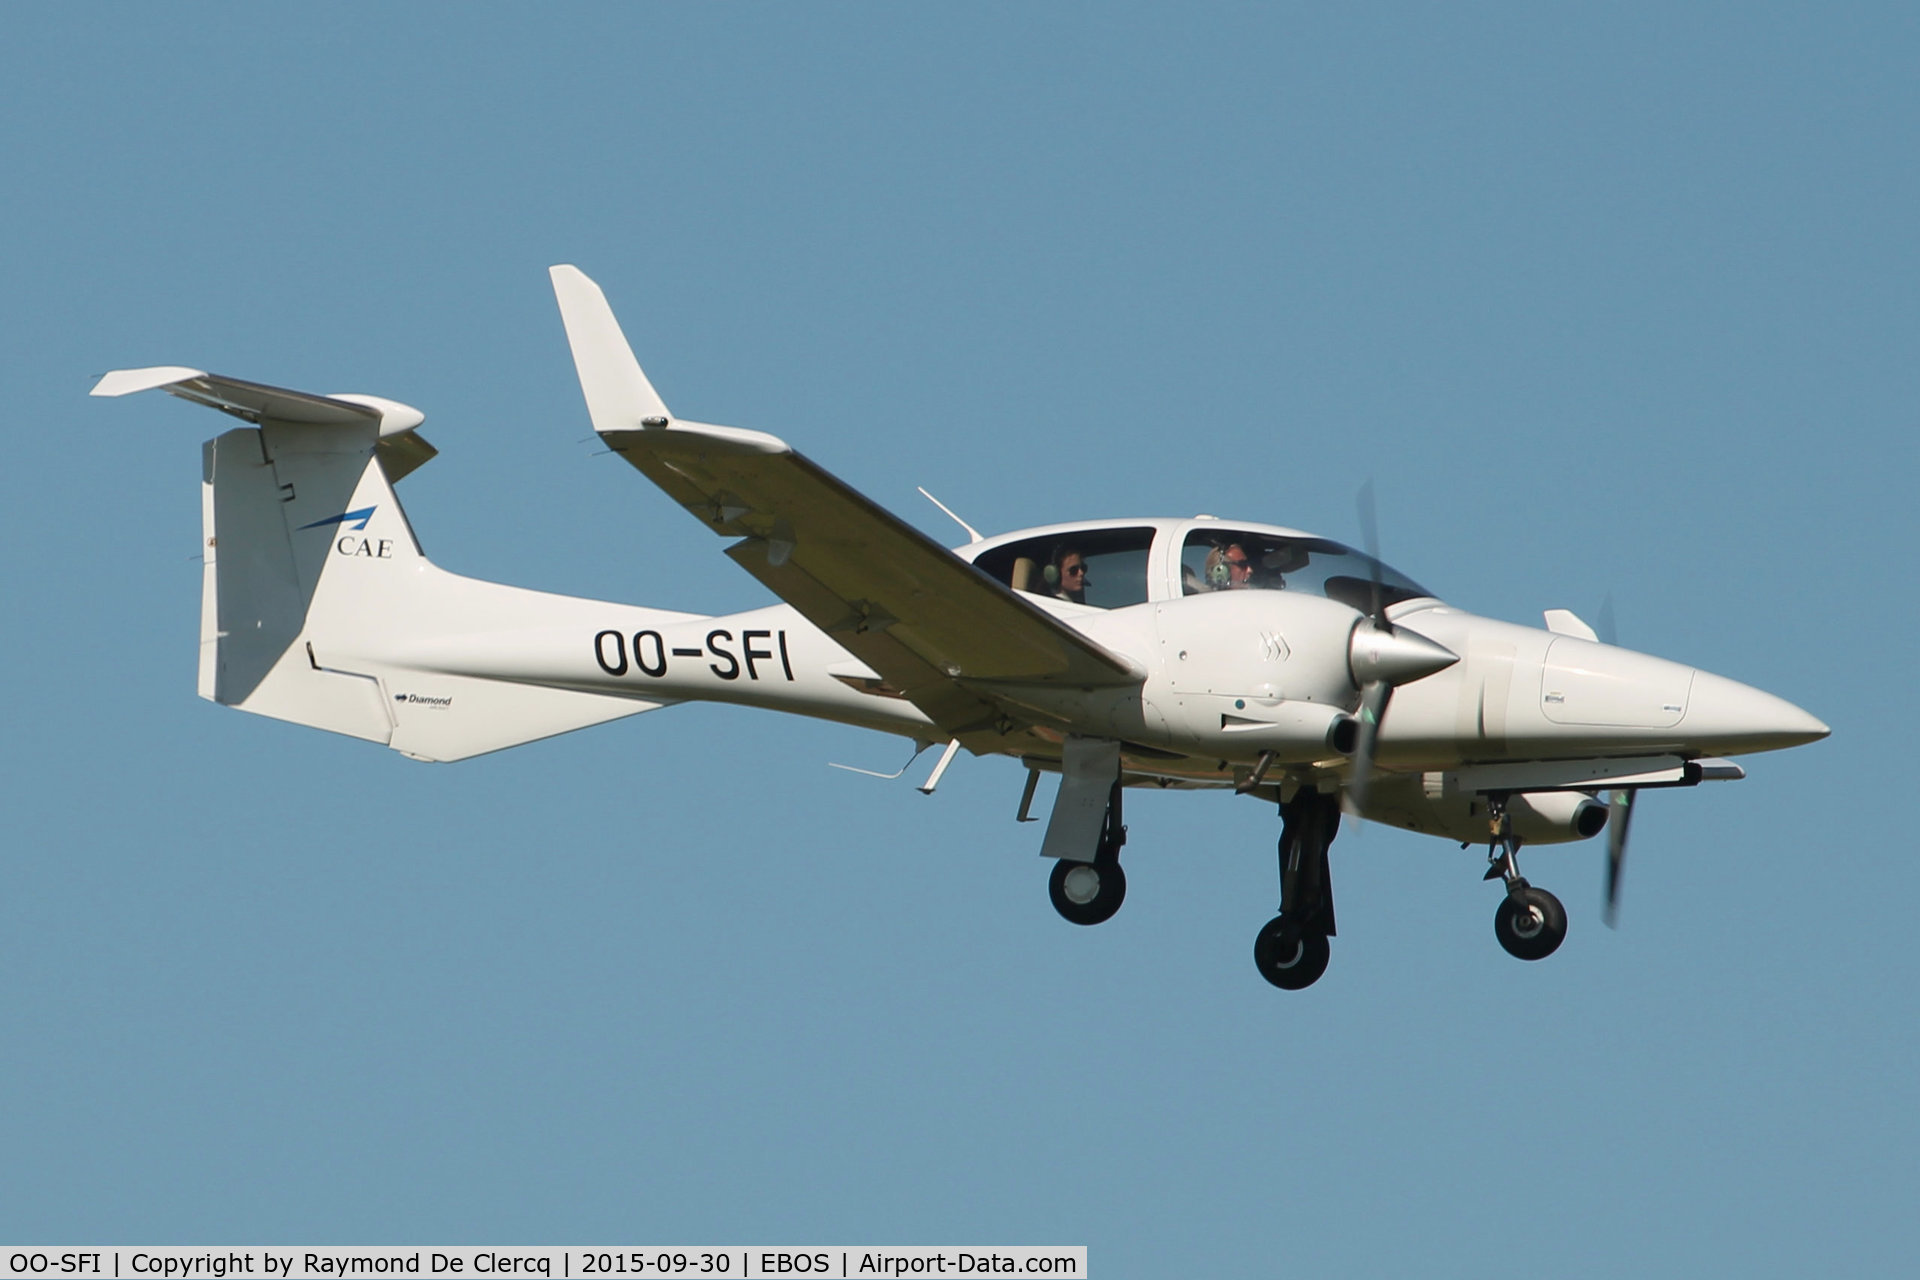 OO-SFI, 2007 Diamond DA-42 Twin Star C/N 42.214, OO-SFI of CAE Oxford Aviation Academy (Brussels) landing at Ostend.